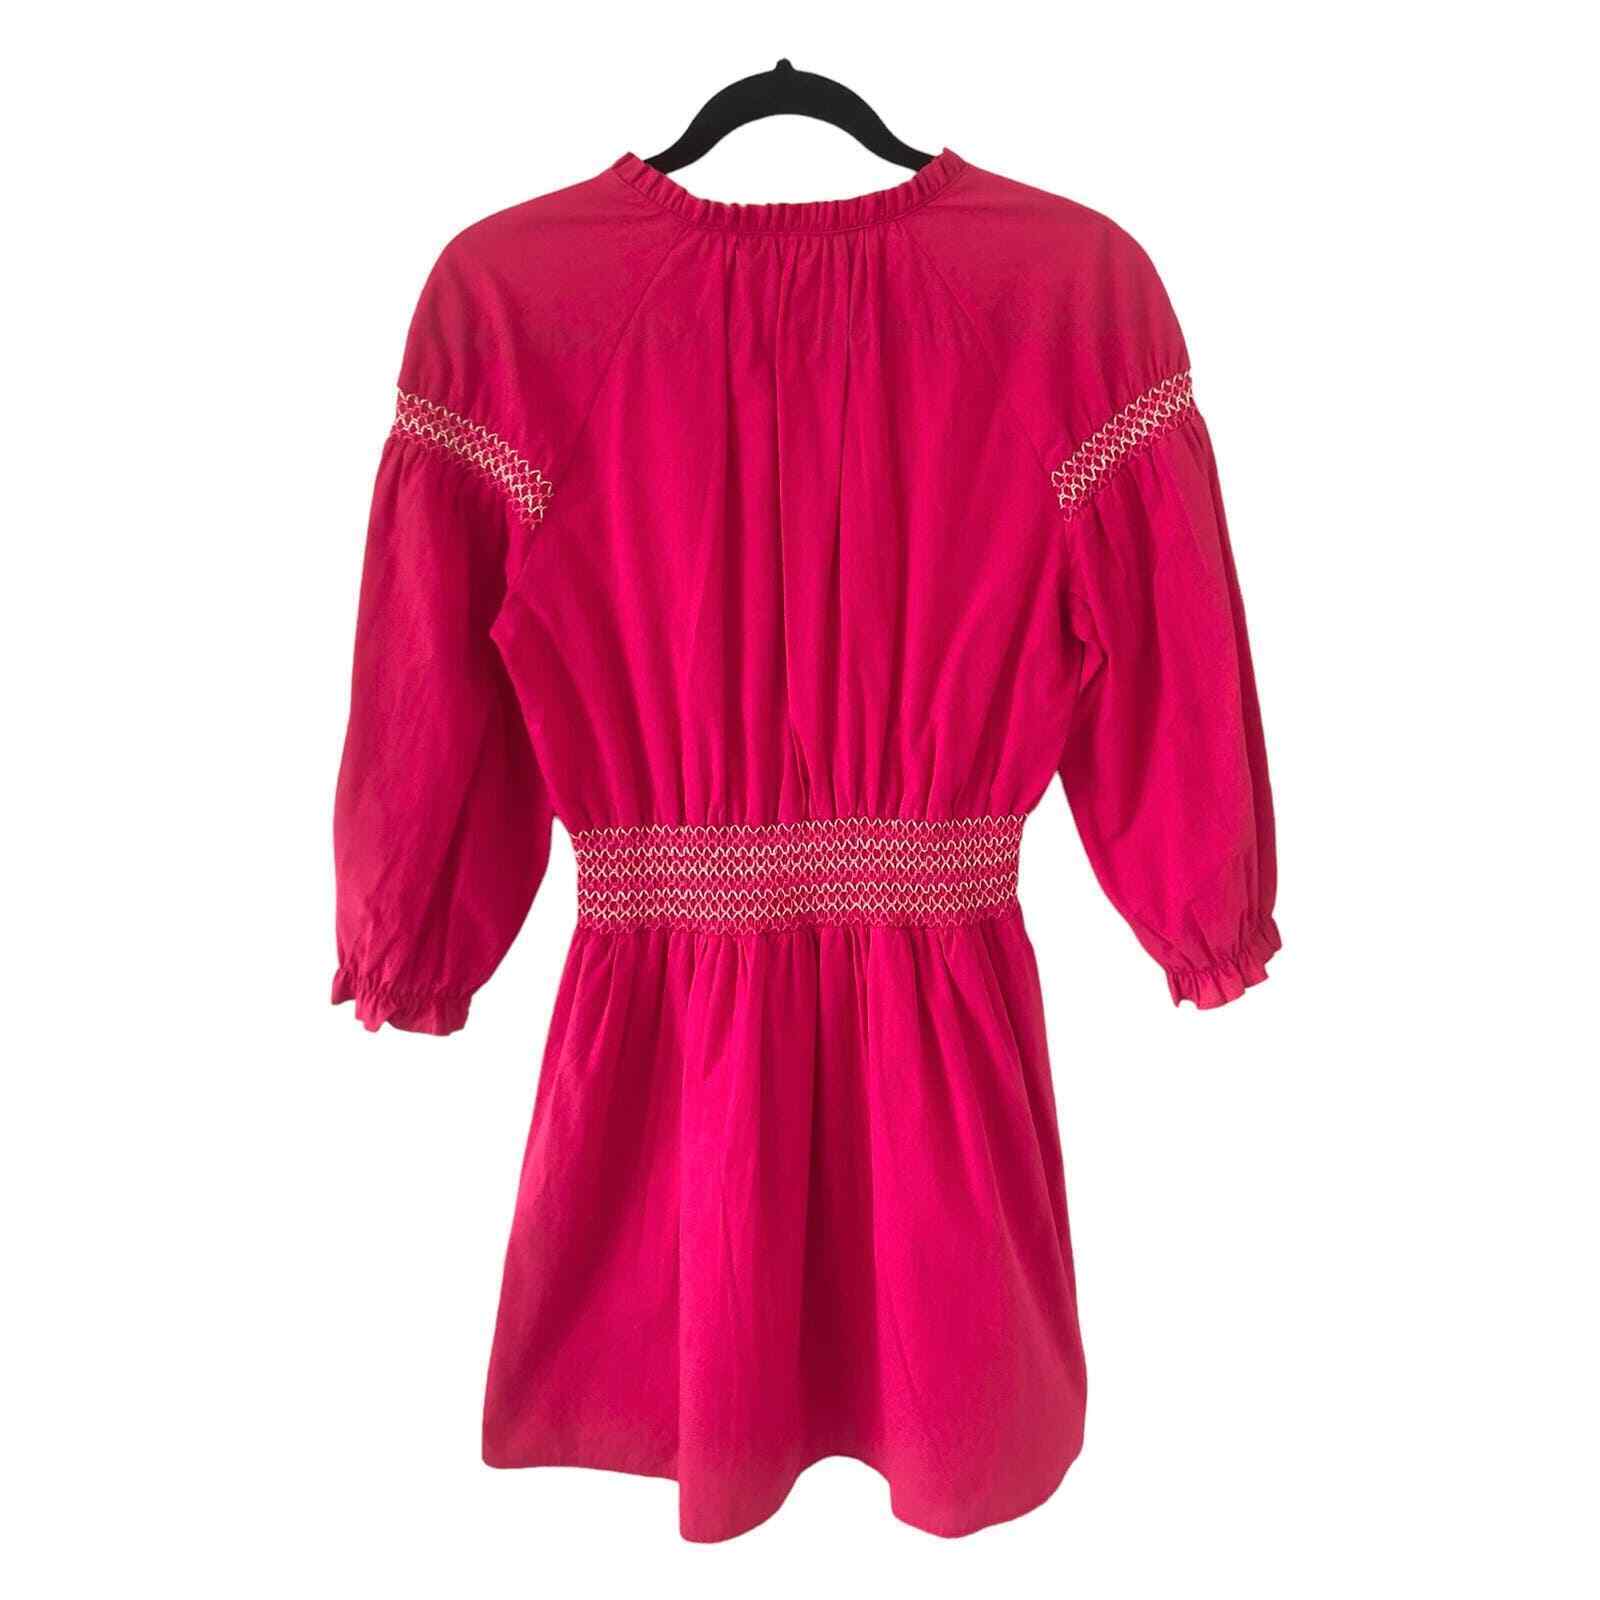 ZARA 100% Cotton Pink Mini Dress with Tassels Siz… - image 2